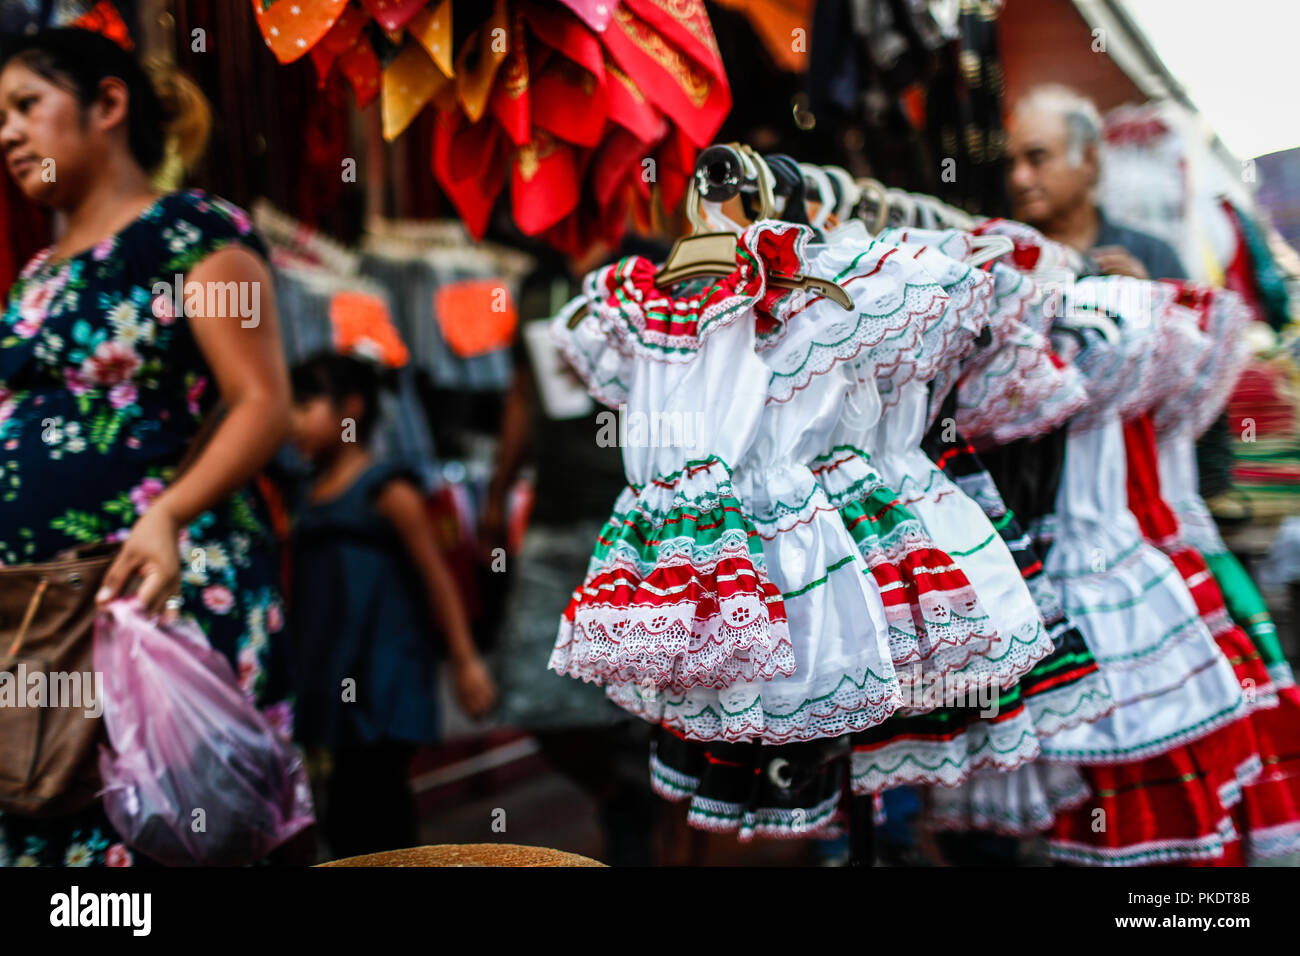 Venta de trajes de adelita y sombreros de charro muy popular este 16 de  septiembre para el grito de independencia. Viva México. Los feriados  nacionales, la revolución mexicana, la independencia de México,